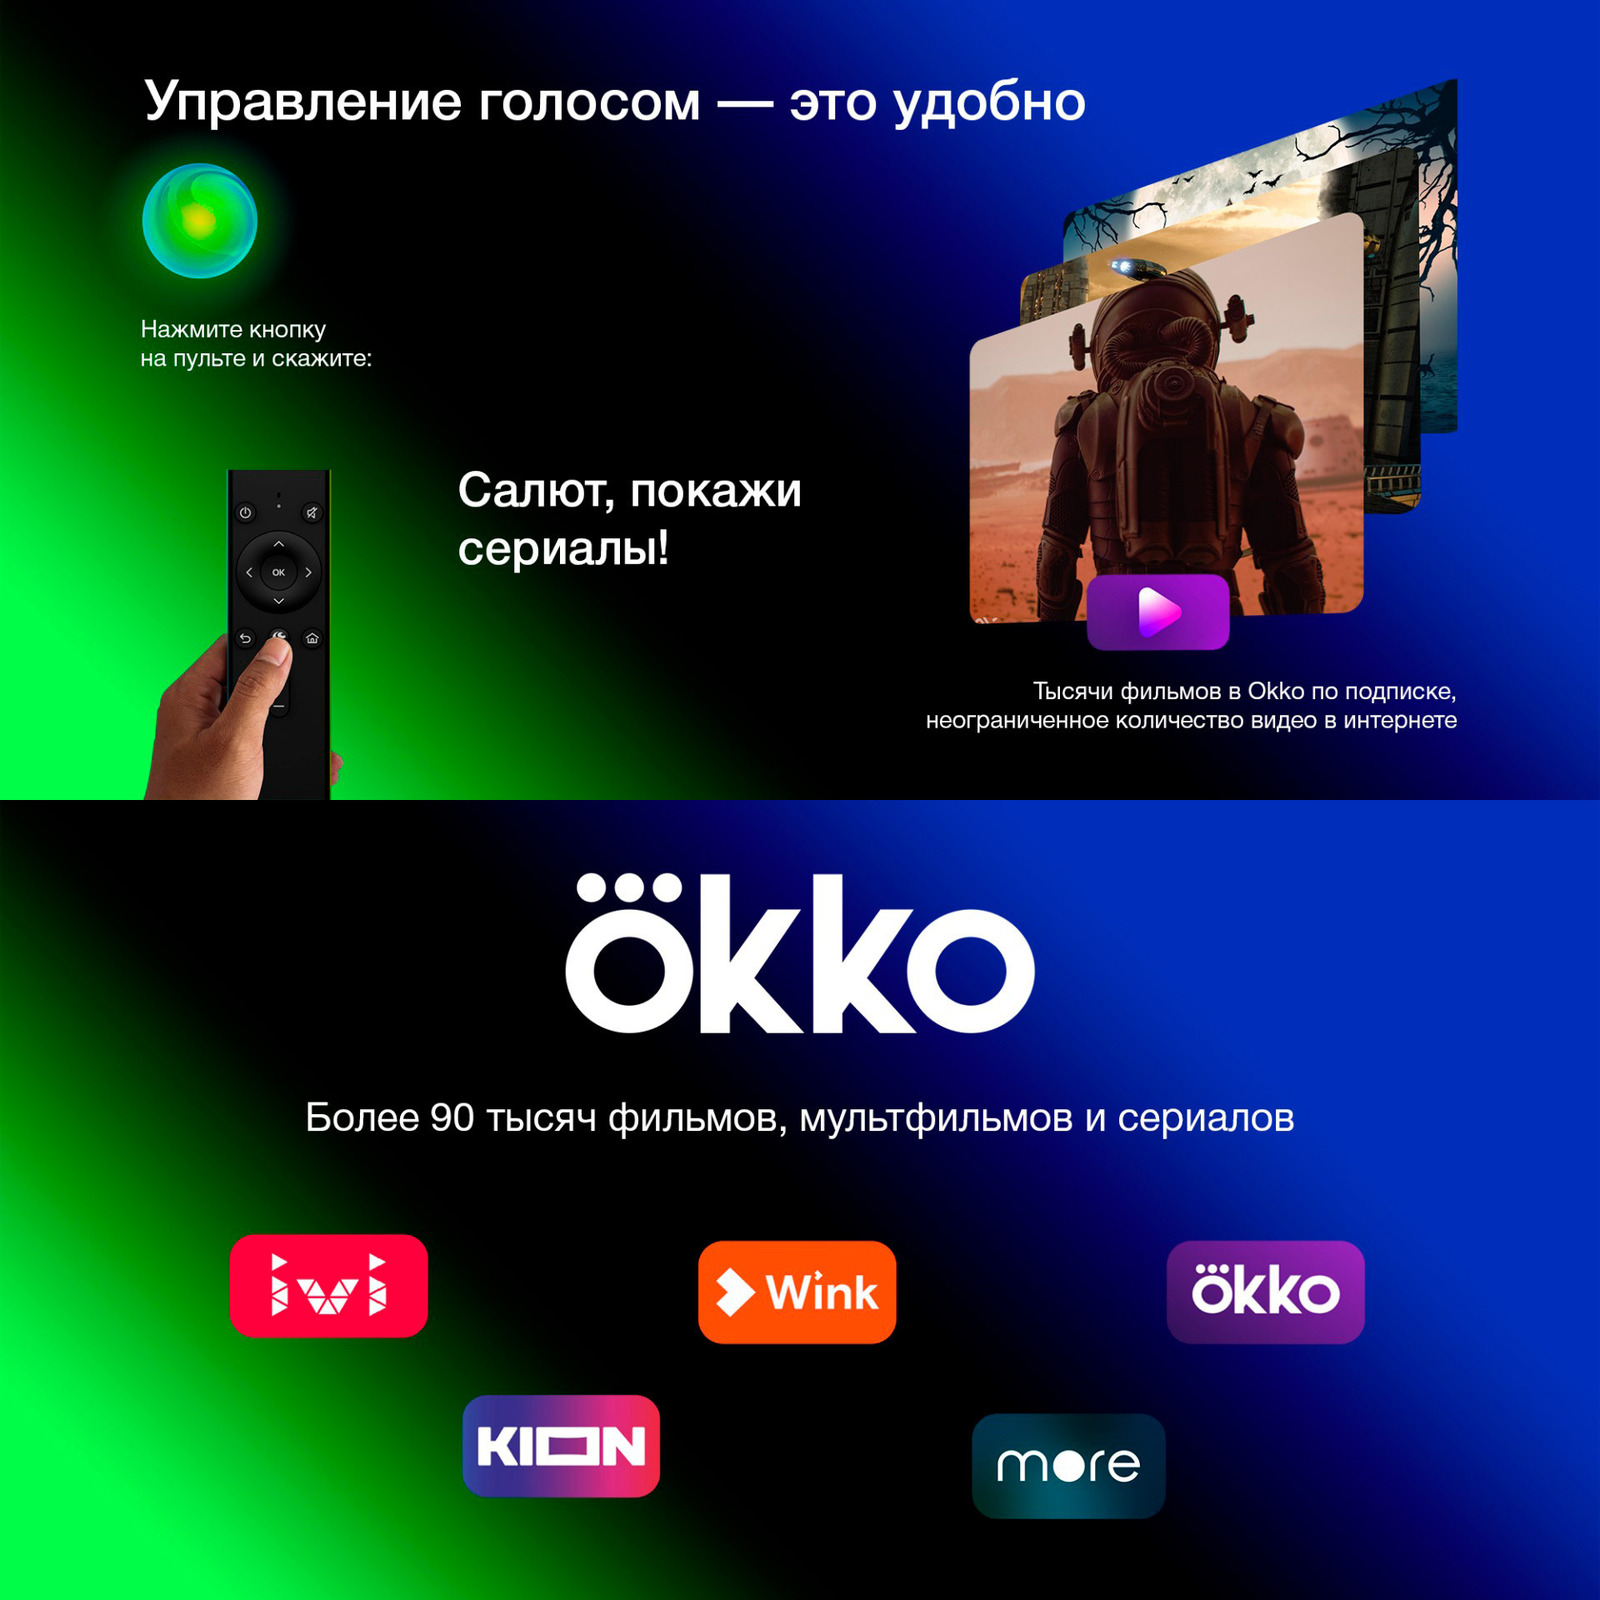 Управление голосом. Более 90 тысяч фильмов и сериалов в OKKO.